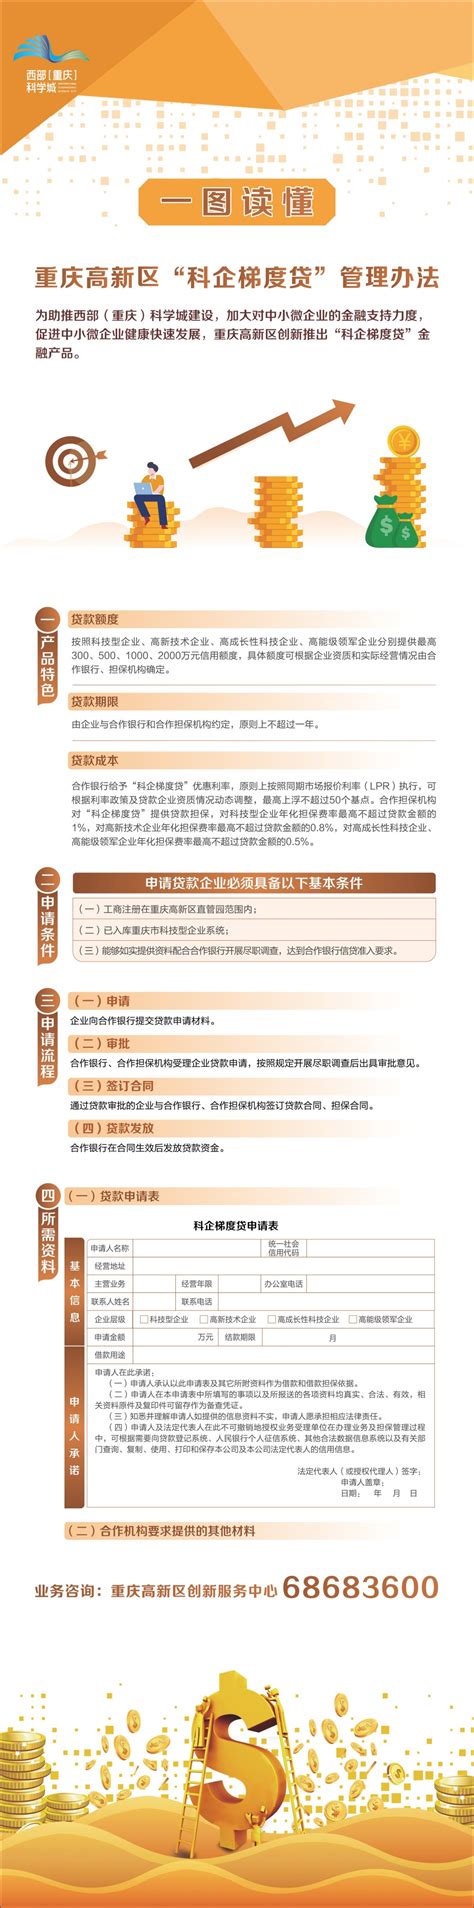 最高2000万元！科学城在重庆首创“科企梯度贷” - 重庆日报网